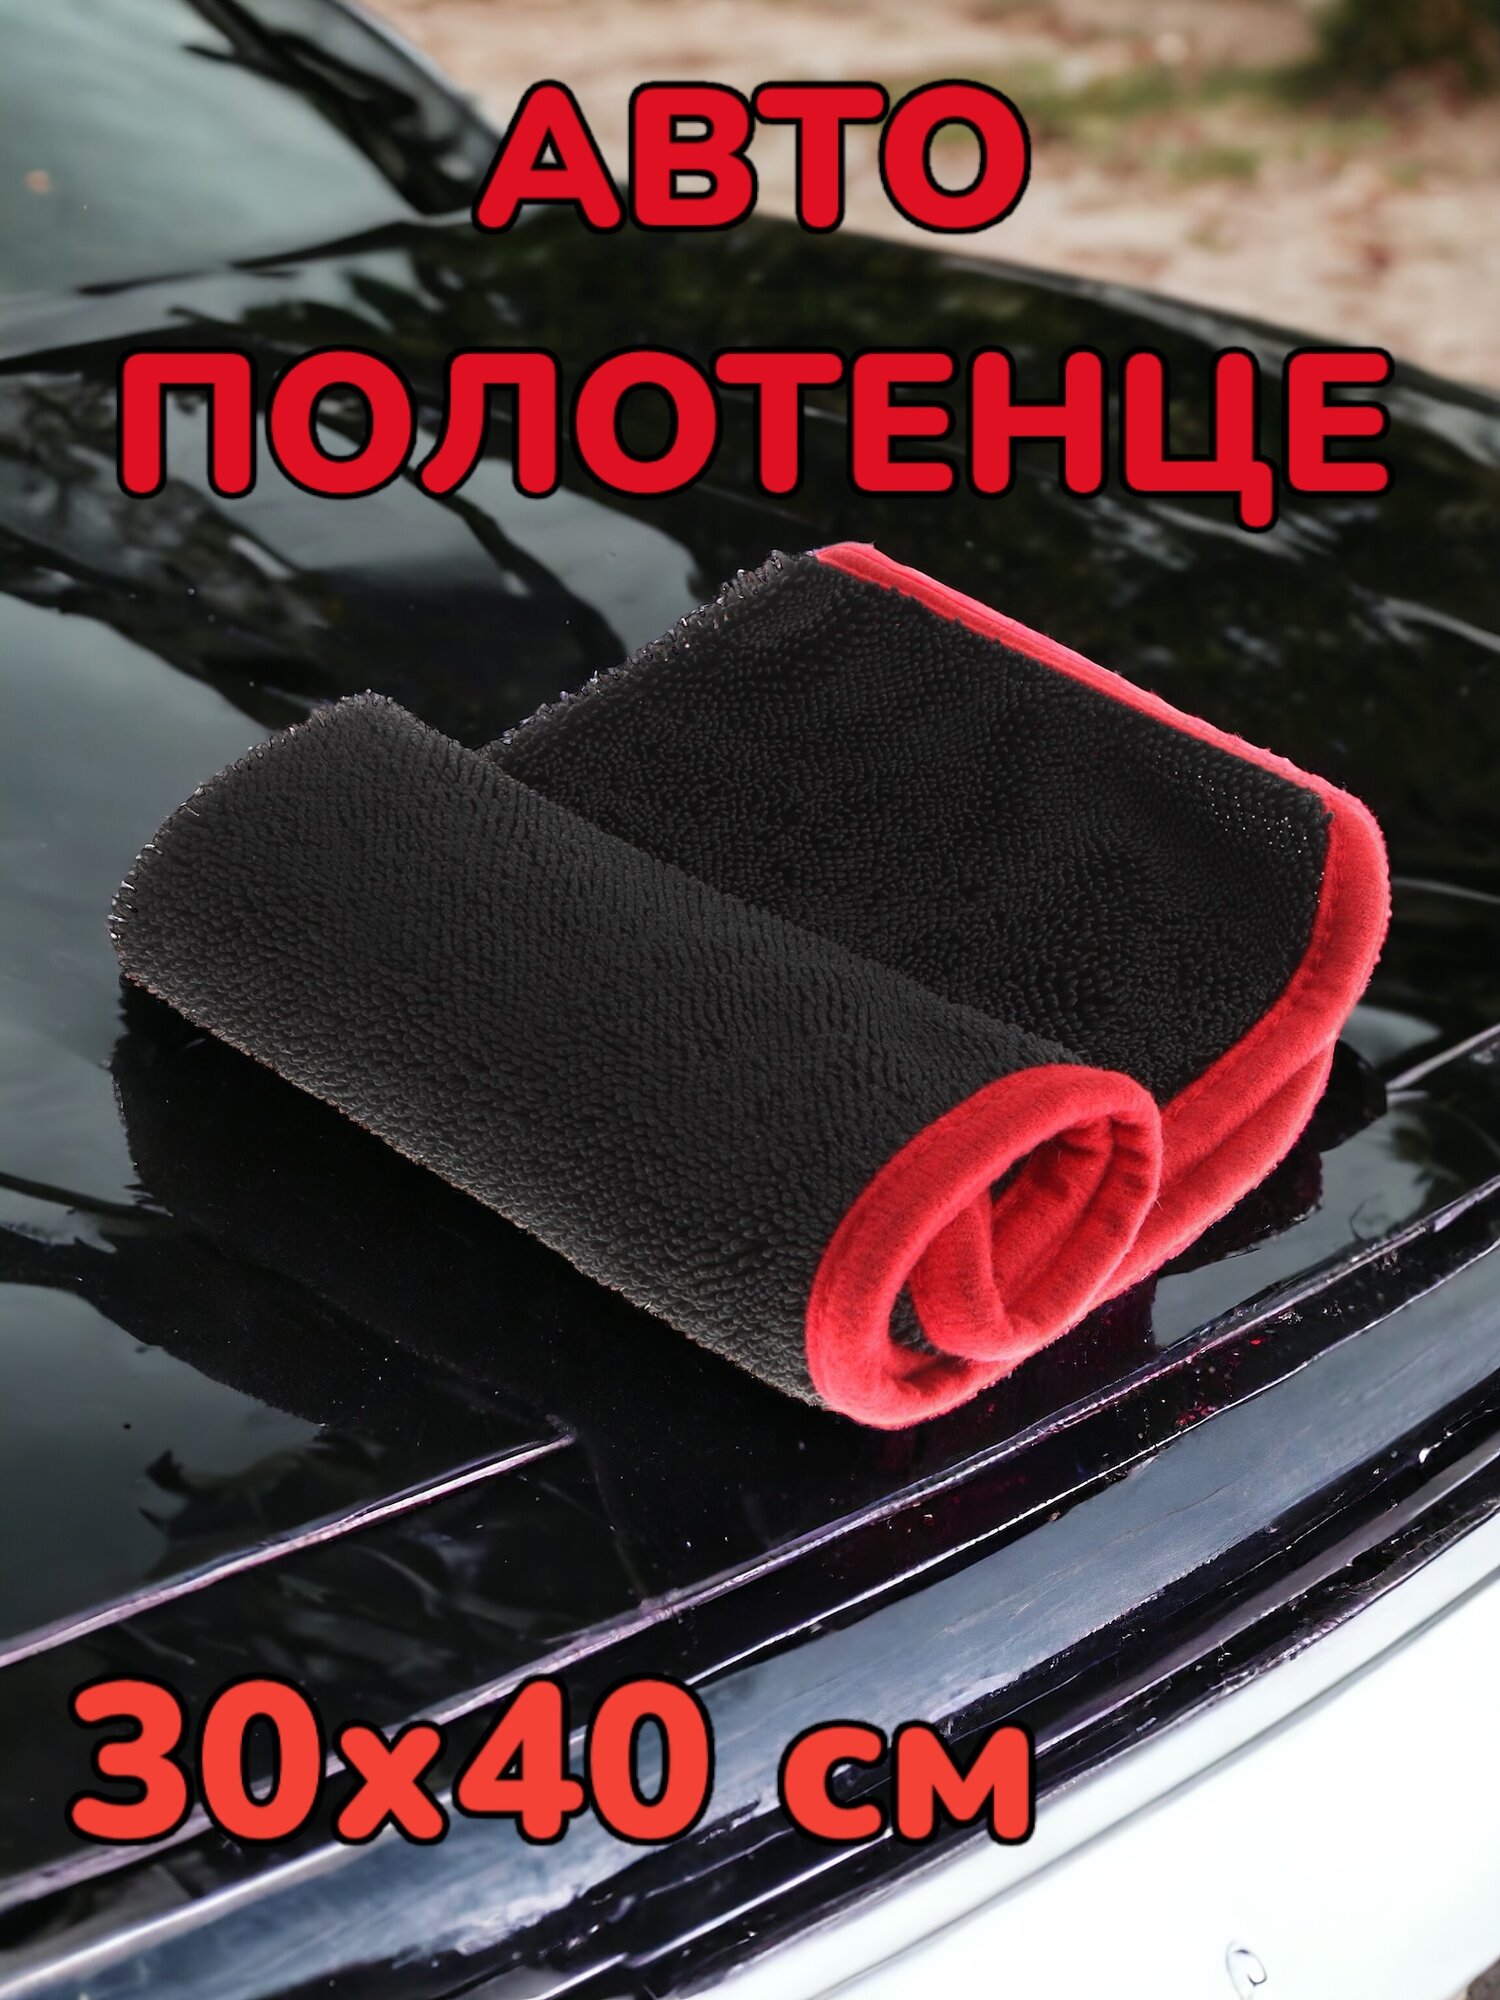 DRY Mini - микрофибра для сушки автомобиля, автополотенце, для сушки кузова, 30x40 см, Chemical Russian